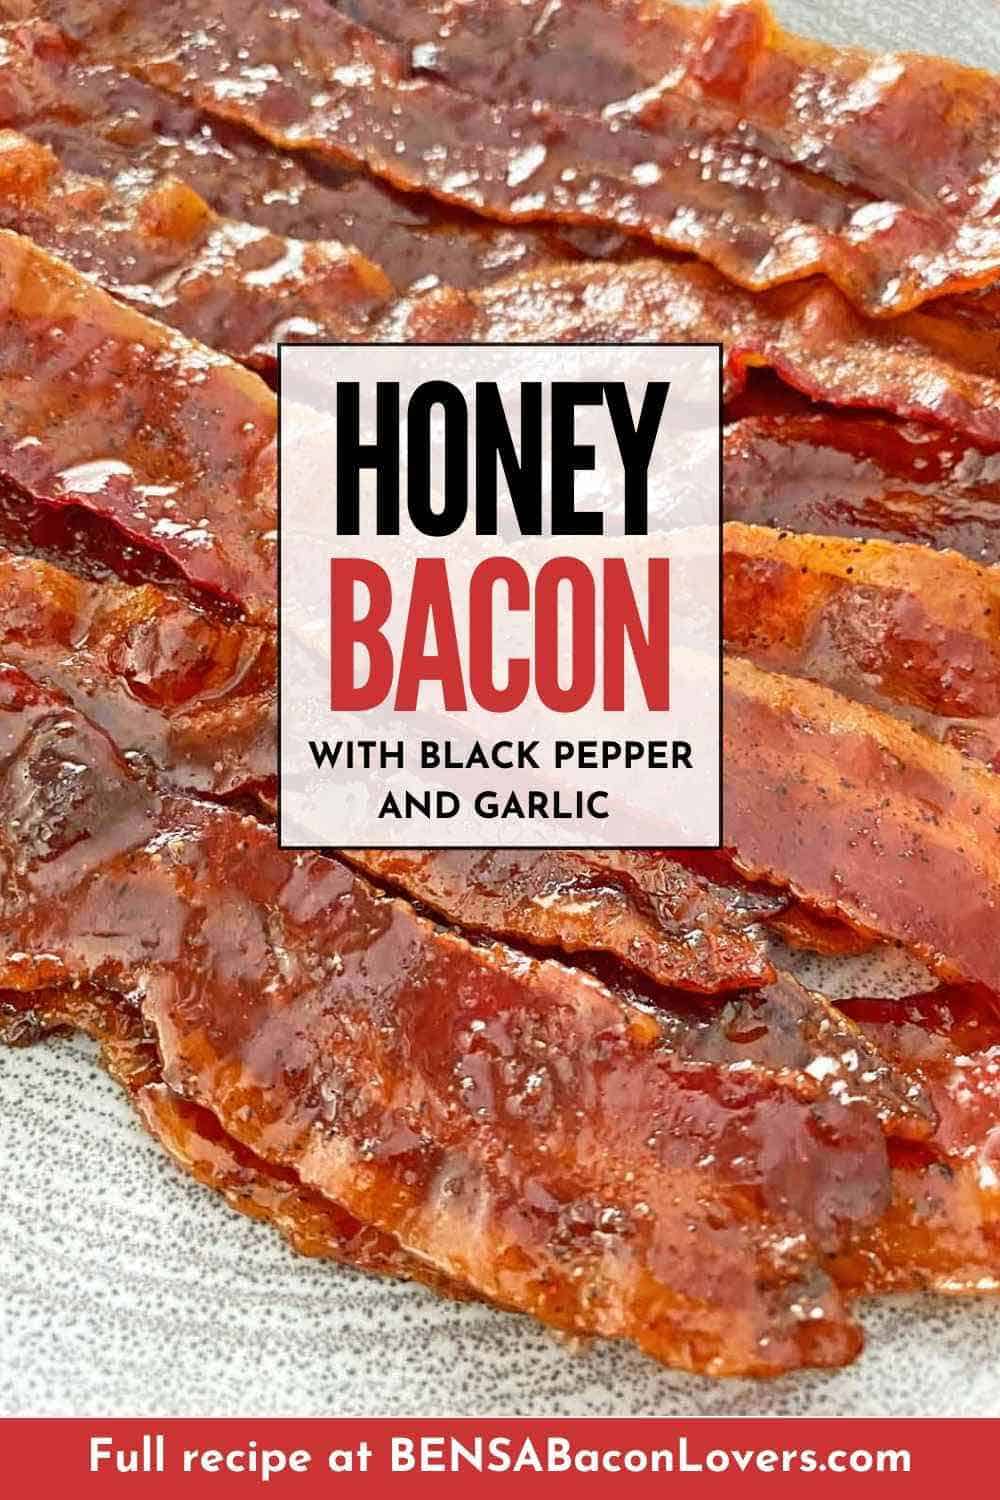 12 strips of glazed honey bacon.